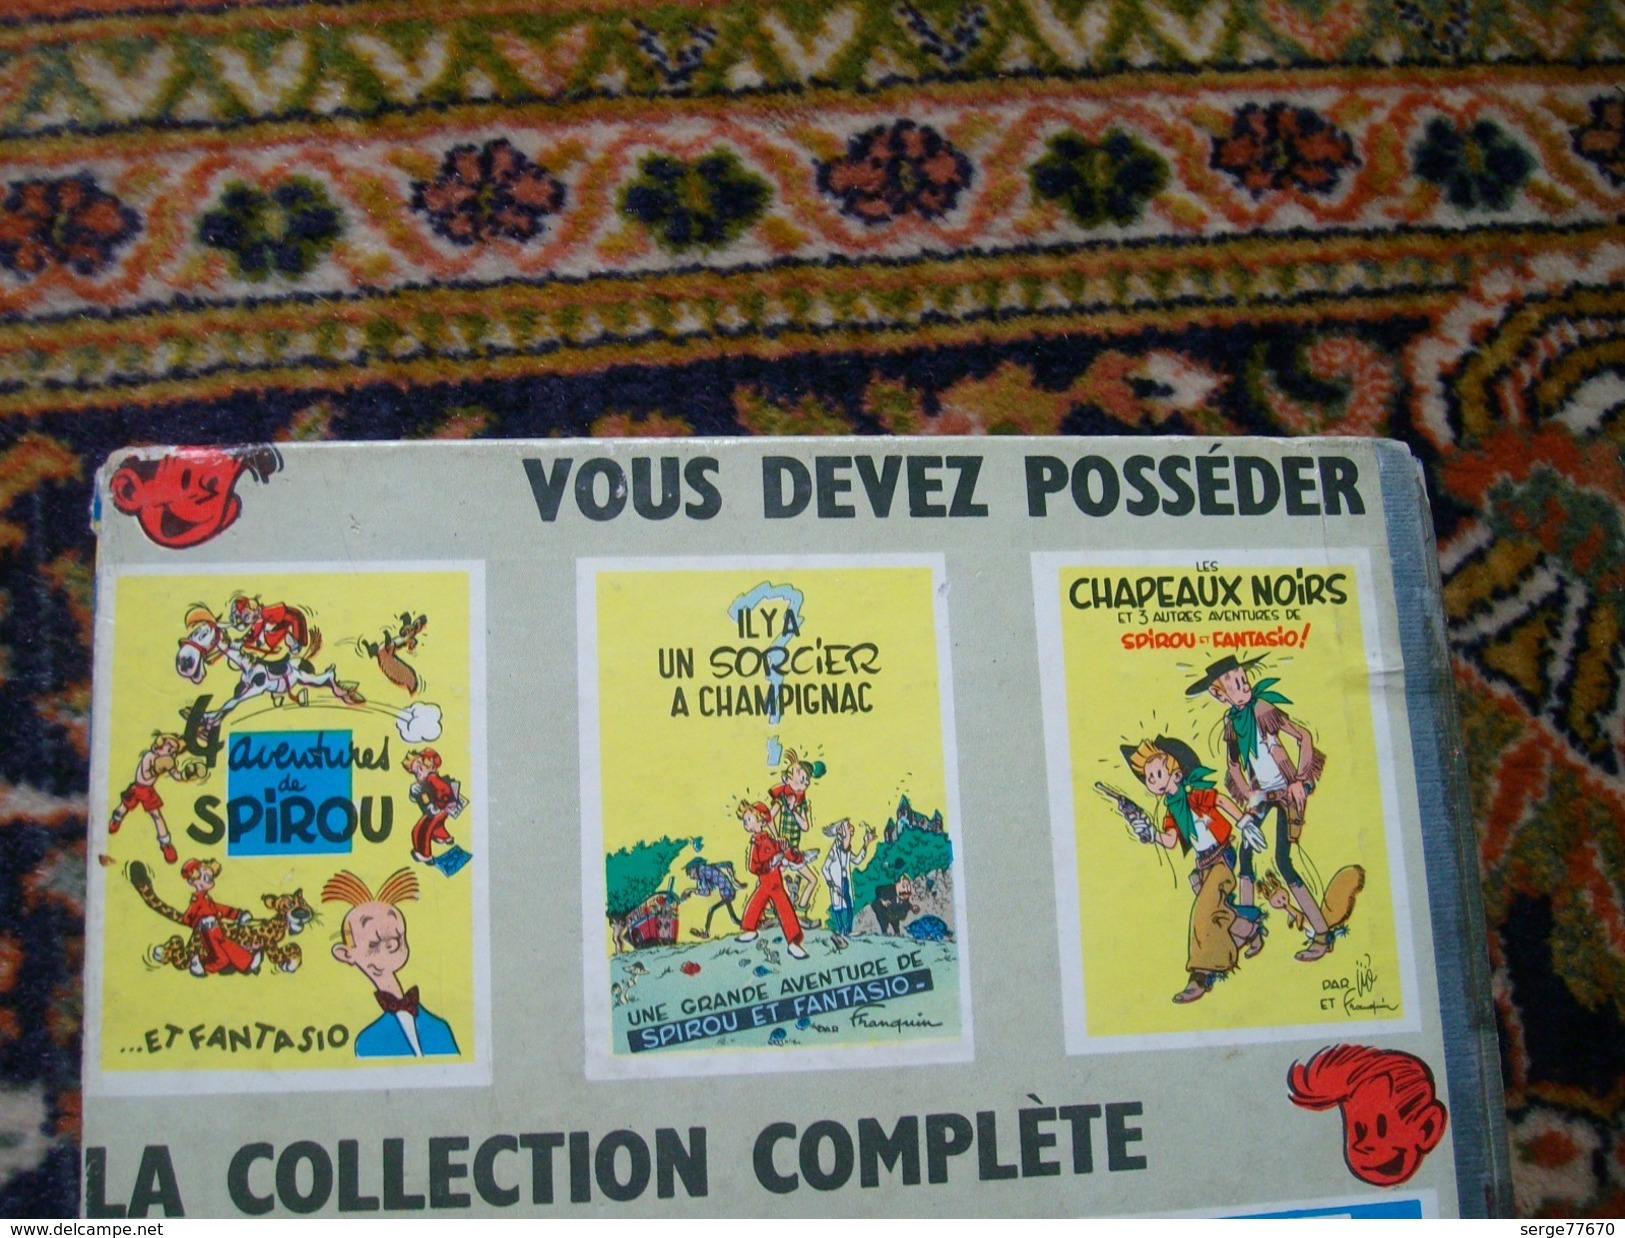 Spirou et Fantasio Franquin La mauvaise tête 1956 édition originale belge eo Dupuis